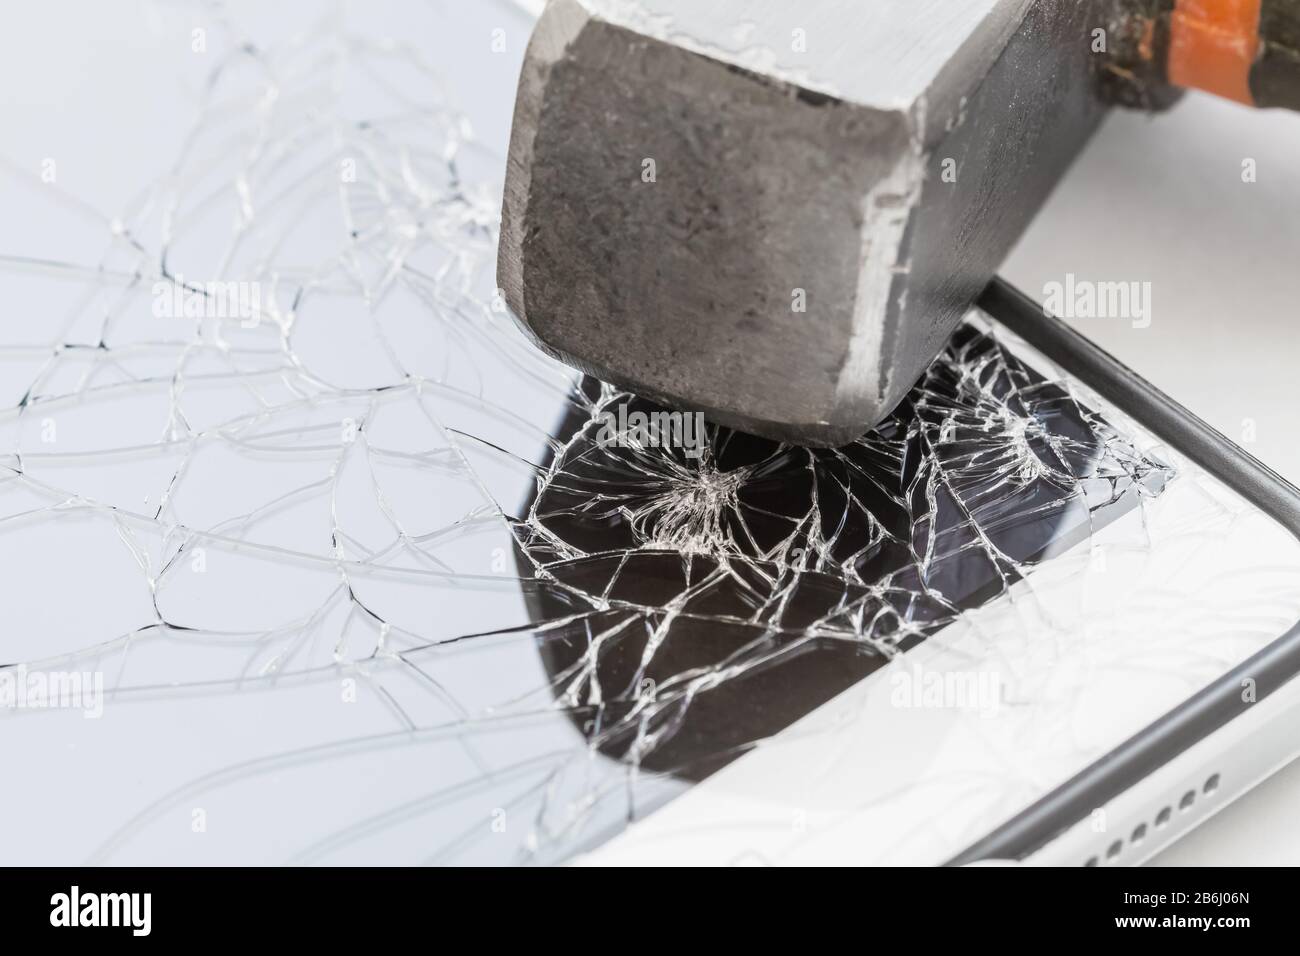 Un marteau se trouve sur le smartphone avec un écran cassé. Le concept de réparation électronique. Gros plan, mise au point sélective Banque D'Images